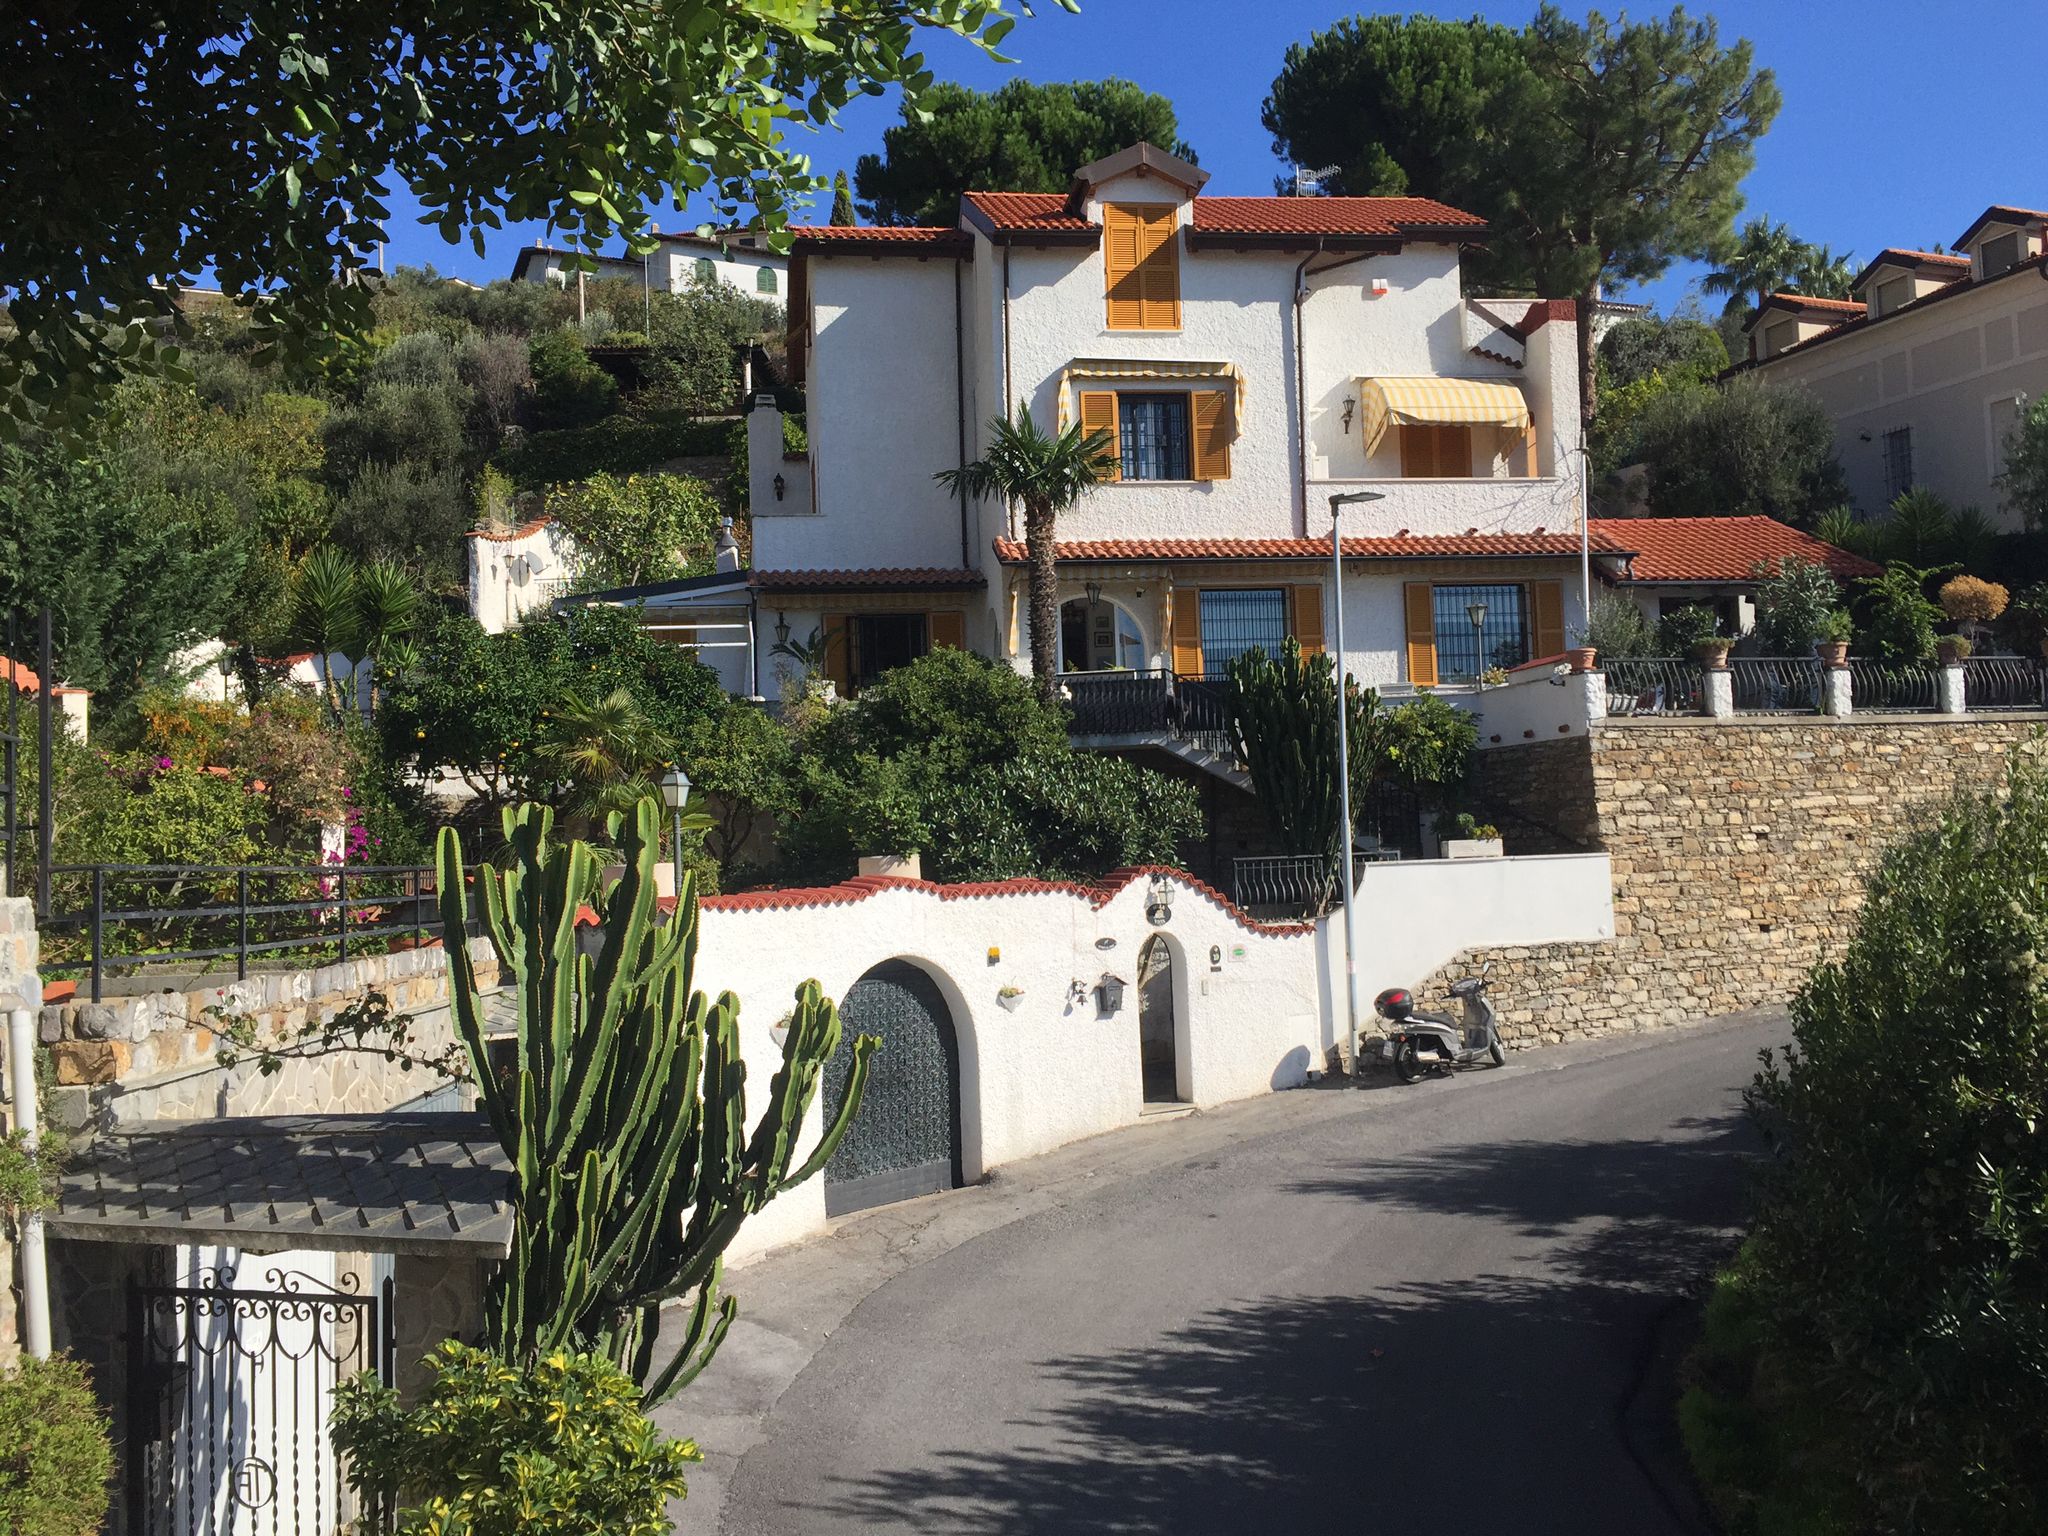 For sale villa by the sea Alassio Liguria